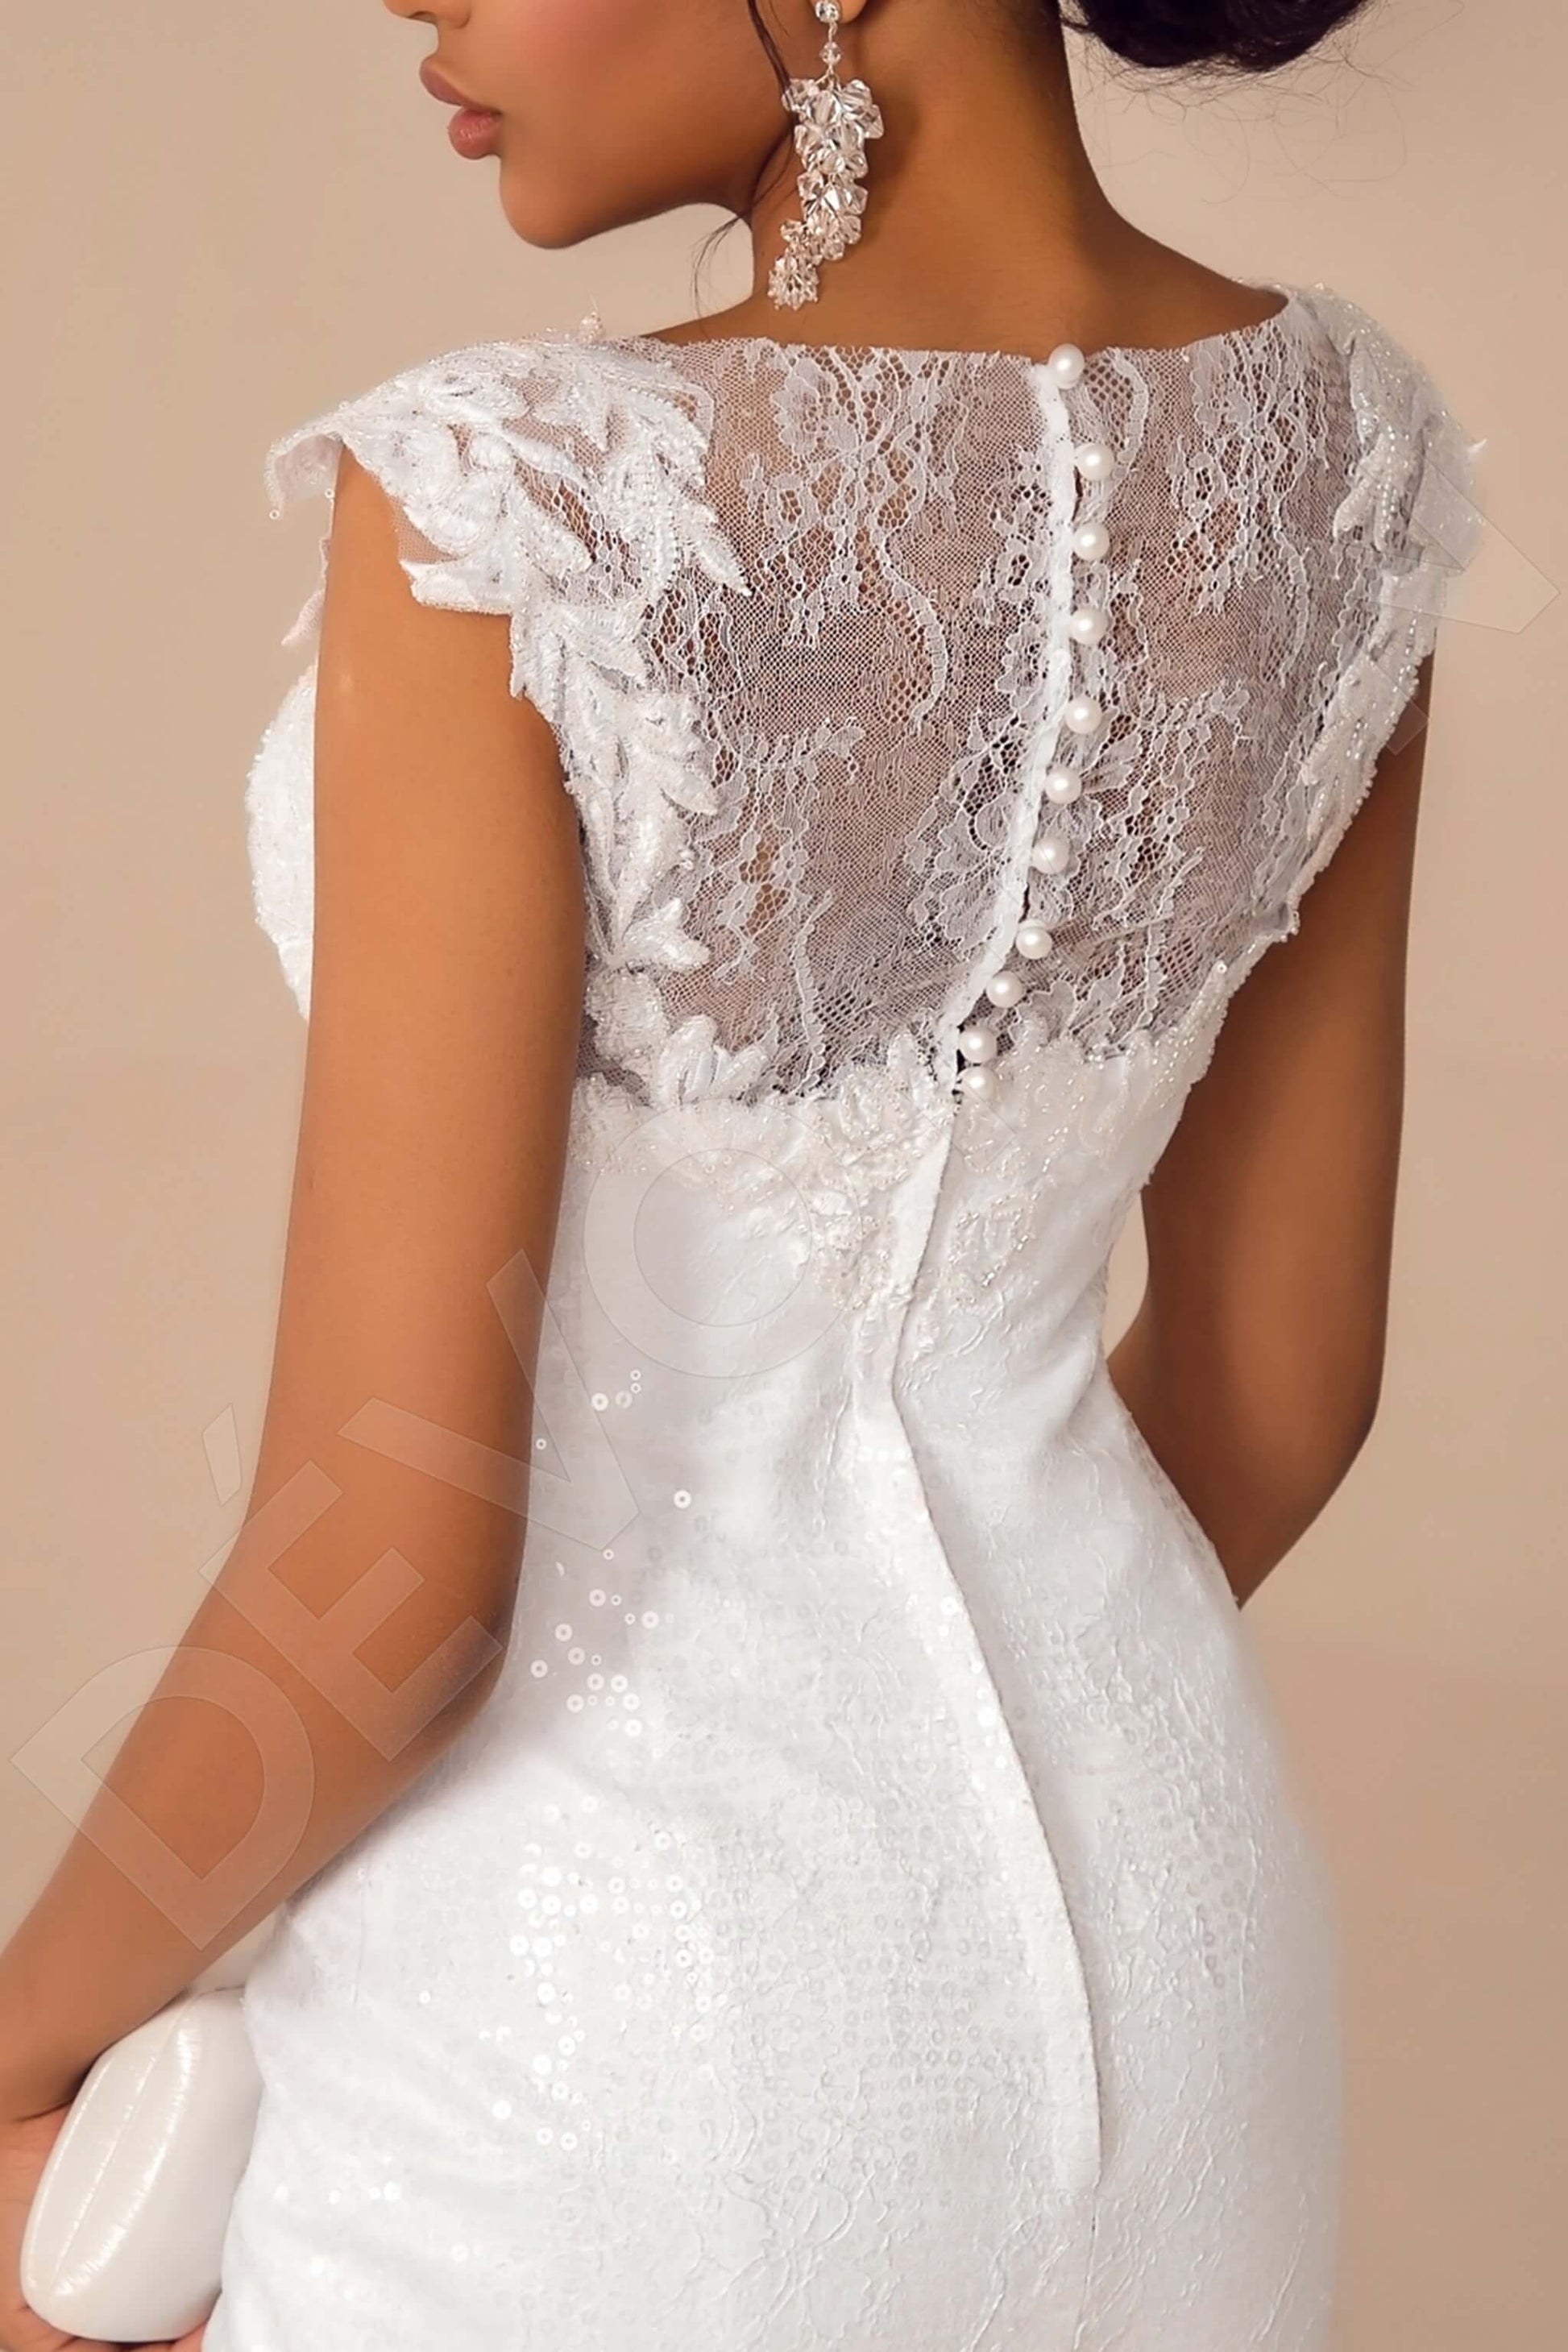 Rylinn Sheath/Column Boat/Bateau White Wedding dress